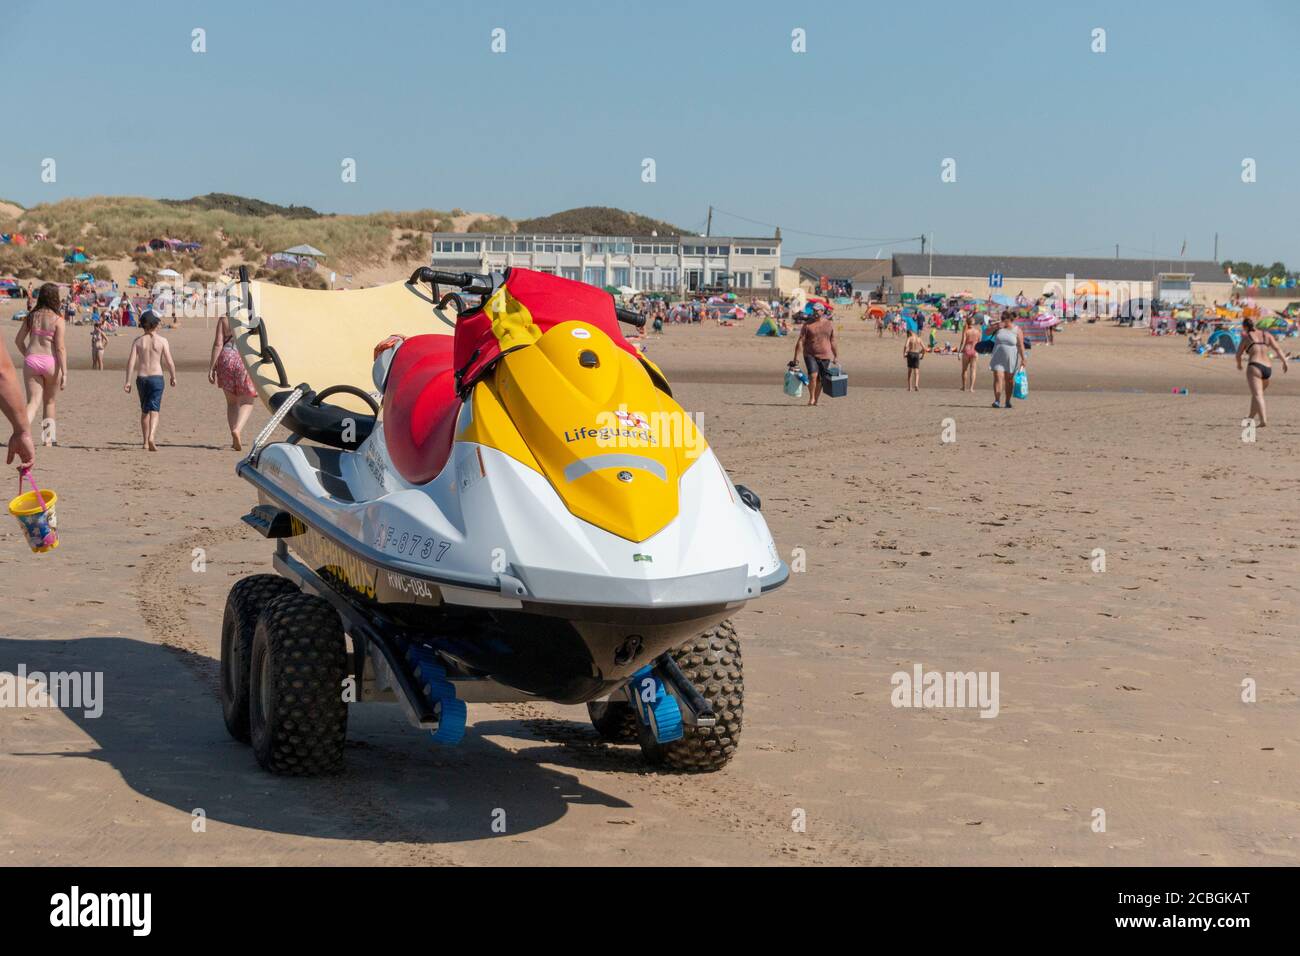 kent-August-2020-England- eine Nahaufnahme eines Rettungsschwimmerjetskis, der wartet Am Strand, falls es einen Notfall gibt Stockfoto